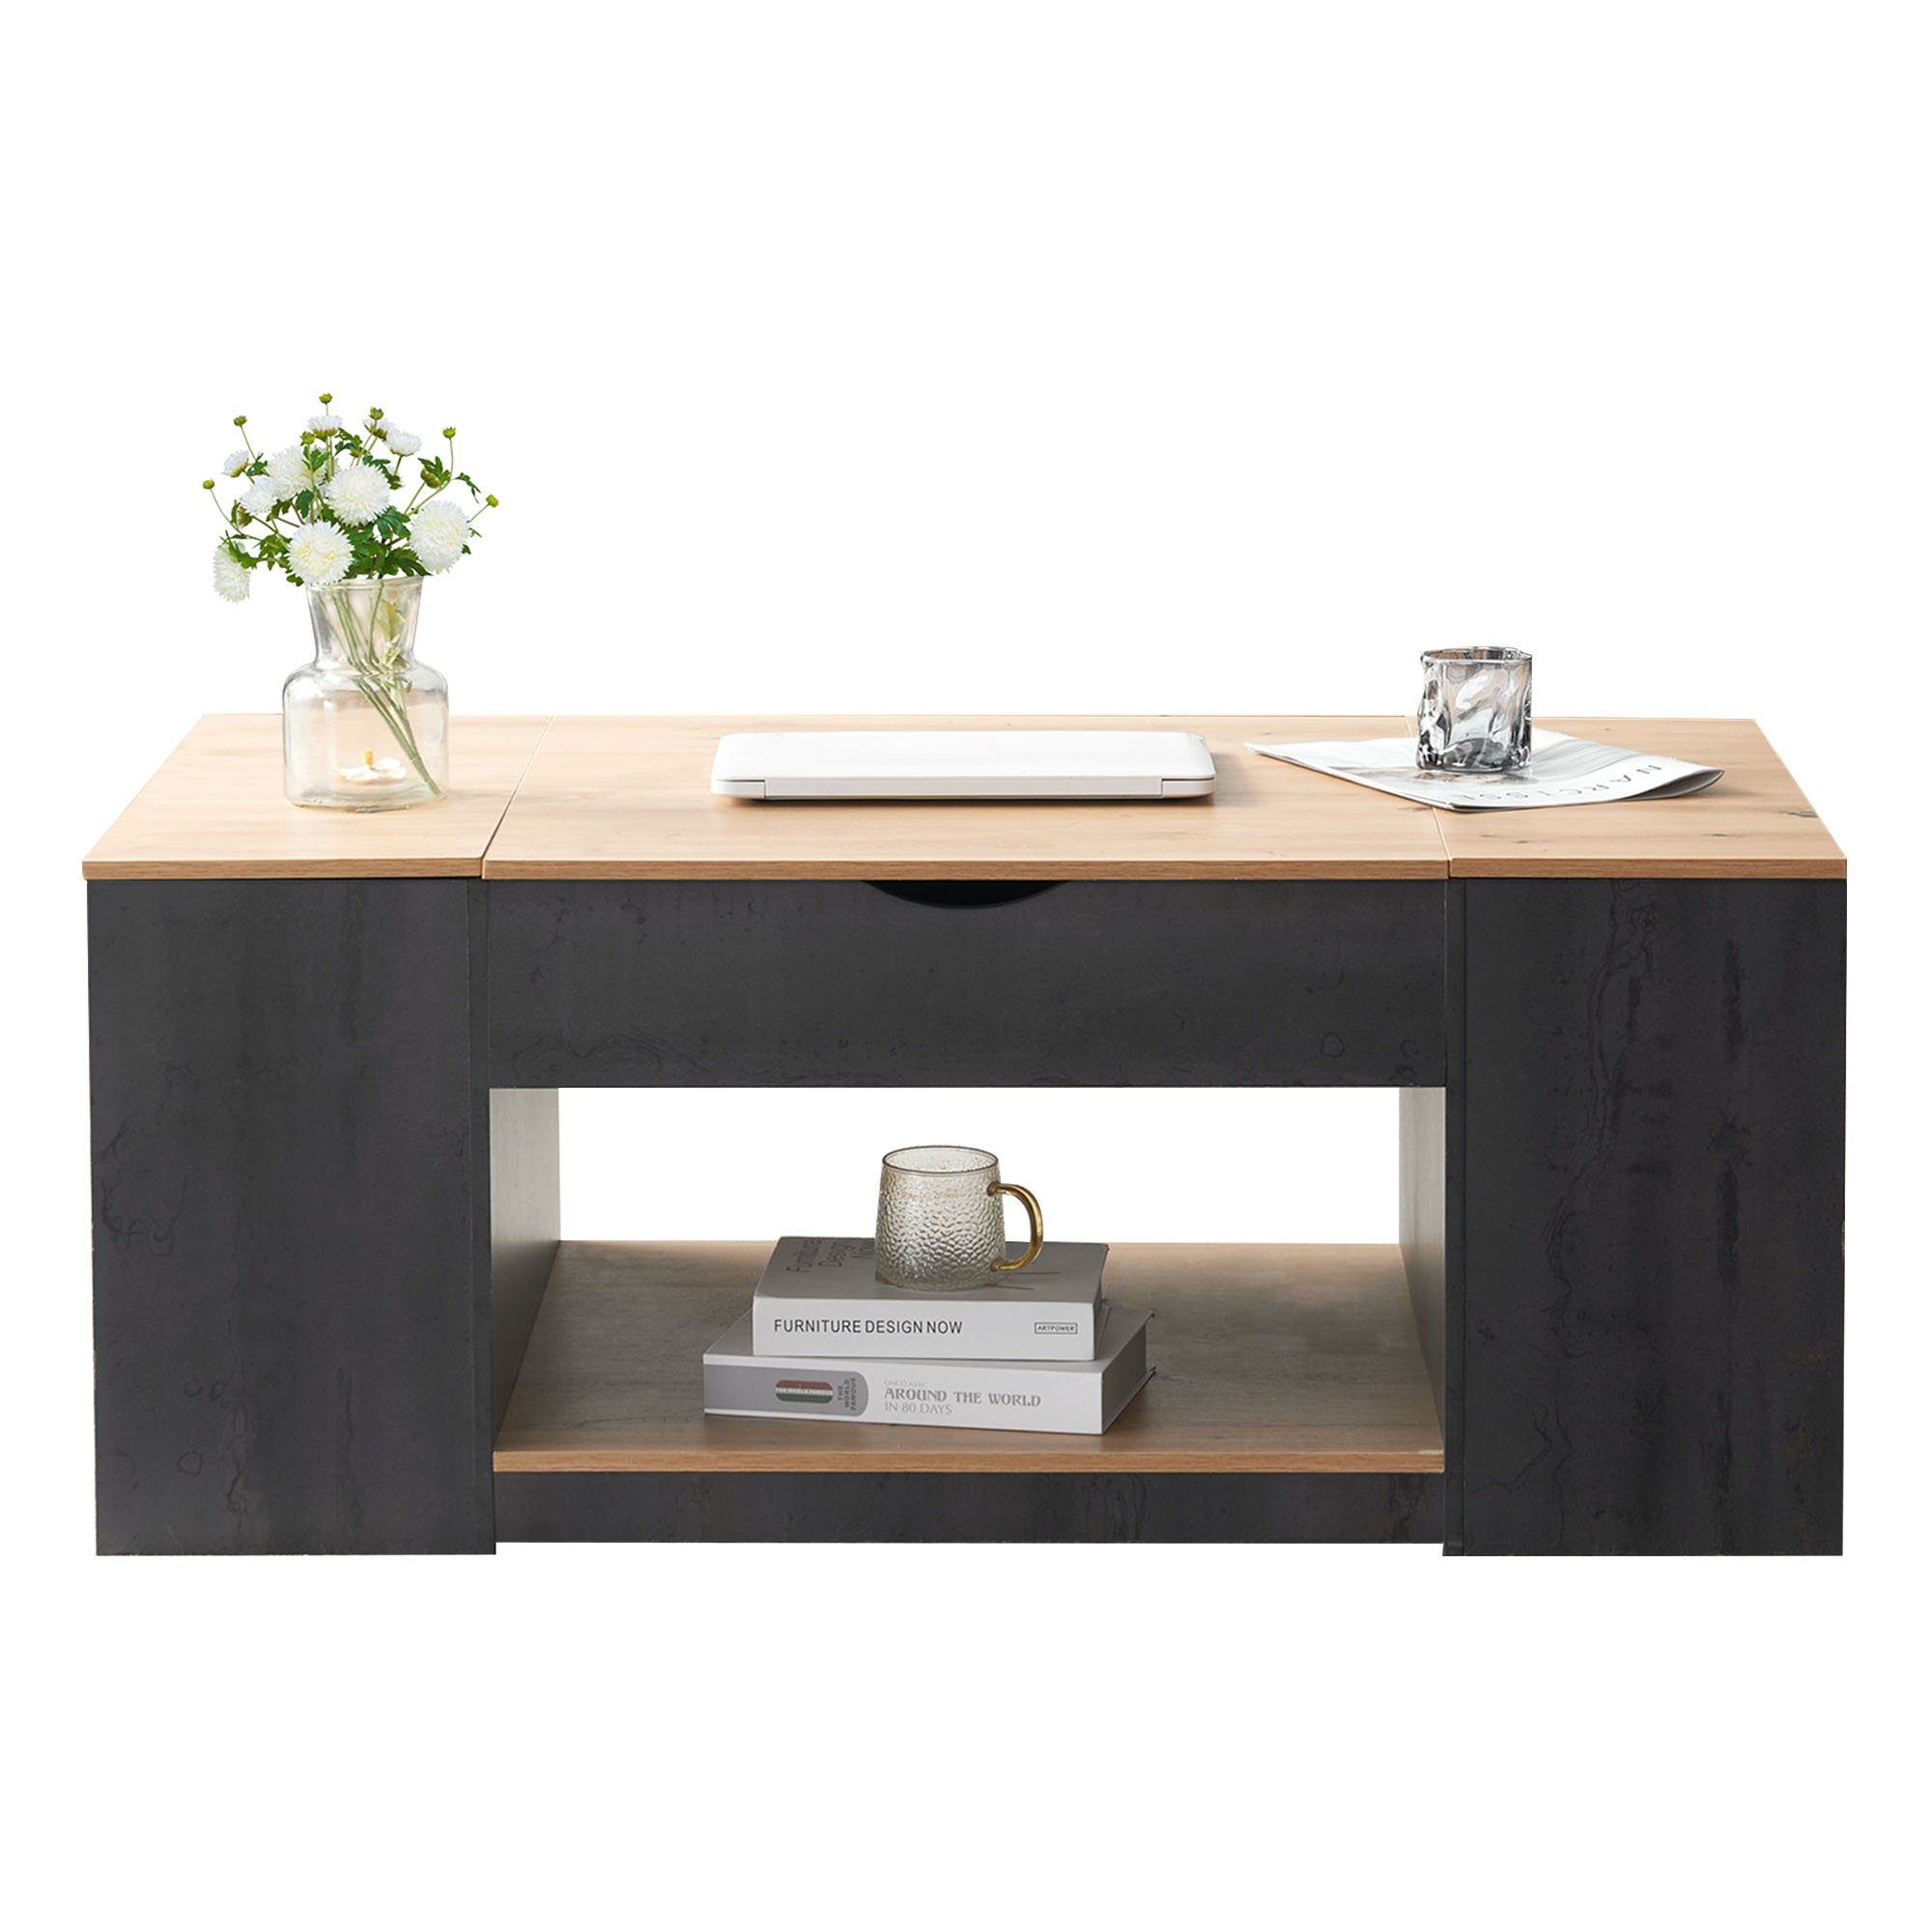 Couchtisch Holztisch unter Kaffeetisch Moderner Sofatisch HAUSS SPLOE Couchtisch Design (Graues Gestell Tischplatte), Stauraum Stilvolles